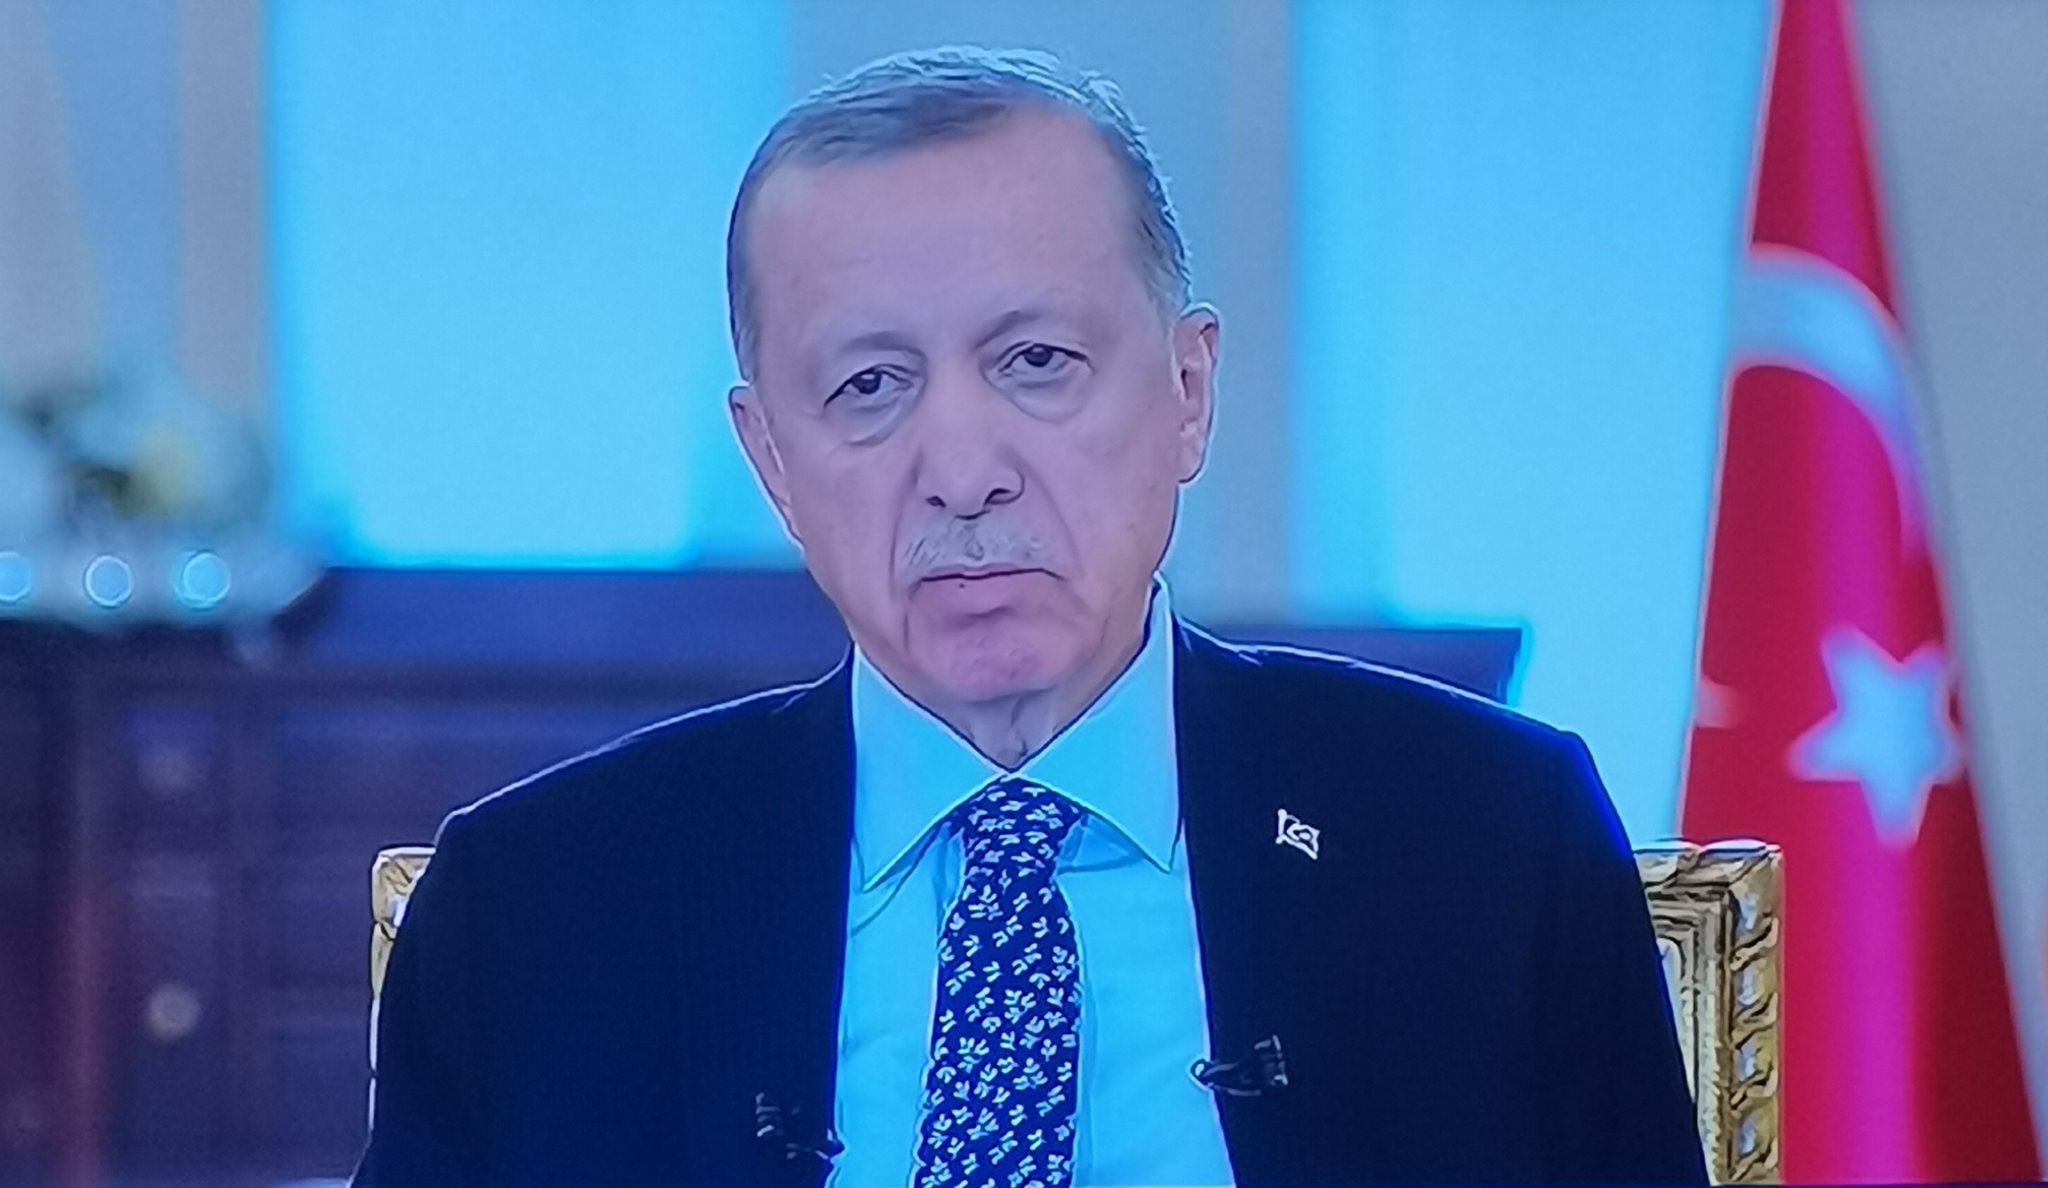 Miting alanlarında izlettiği görüntülerin montaj olduğunu kabul eden Erdoğan'a Kılıçdaroğlu'ndan yanıt geldi: Montajcı sahtekar